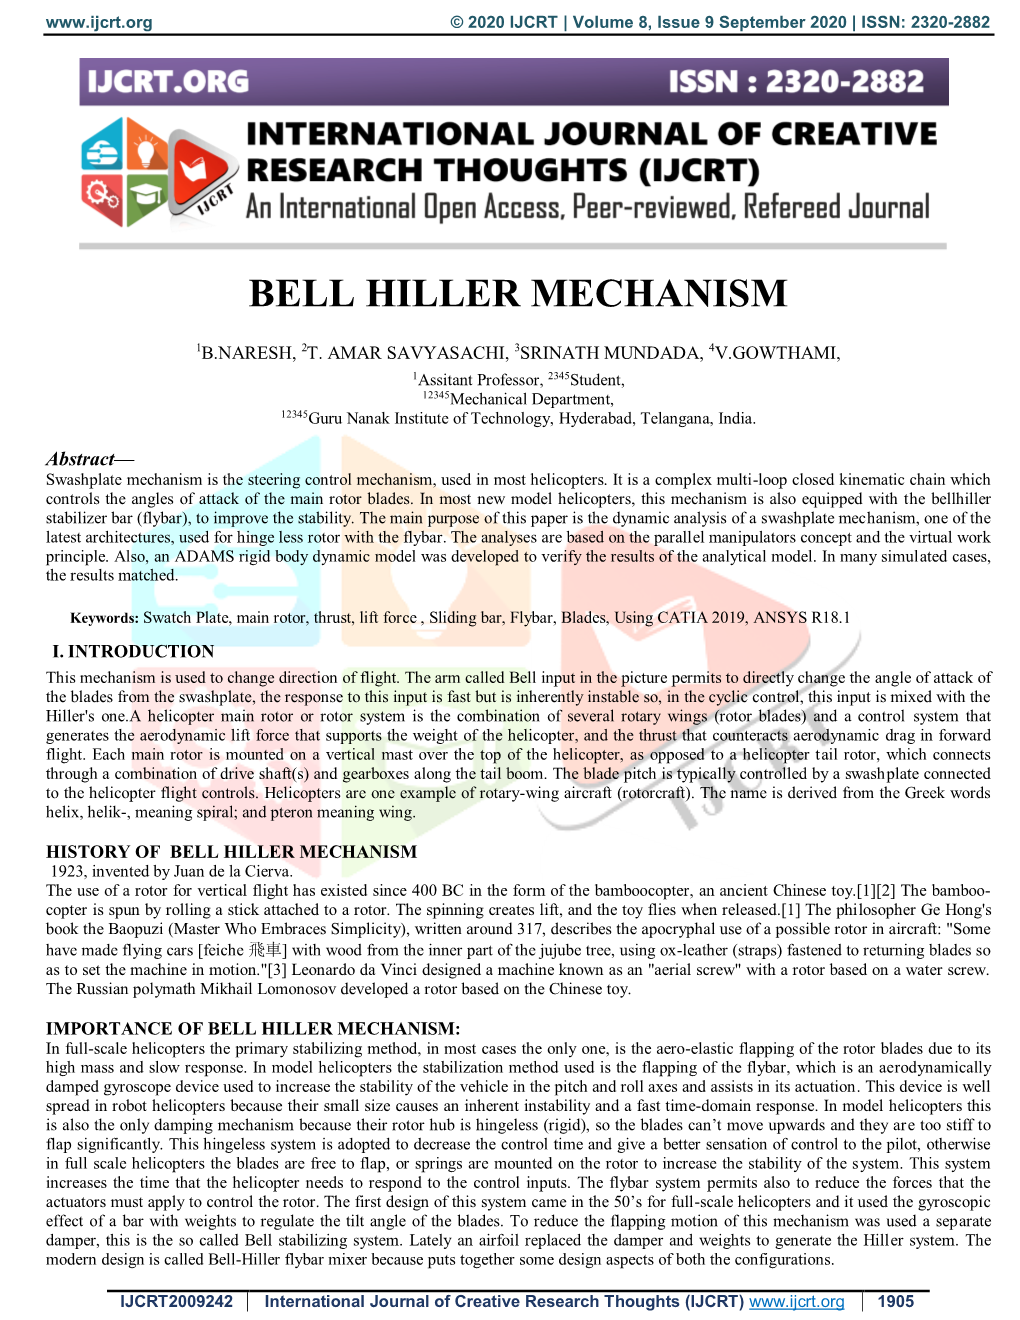 Bell Hiller Mechanism